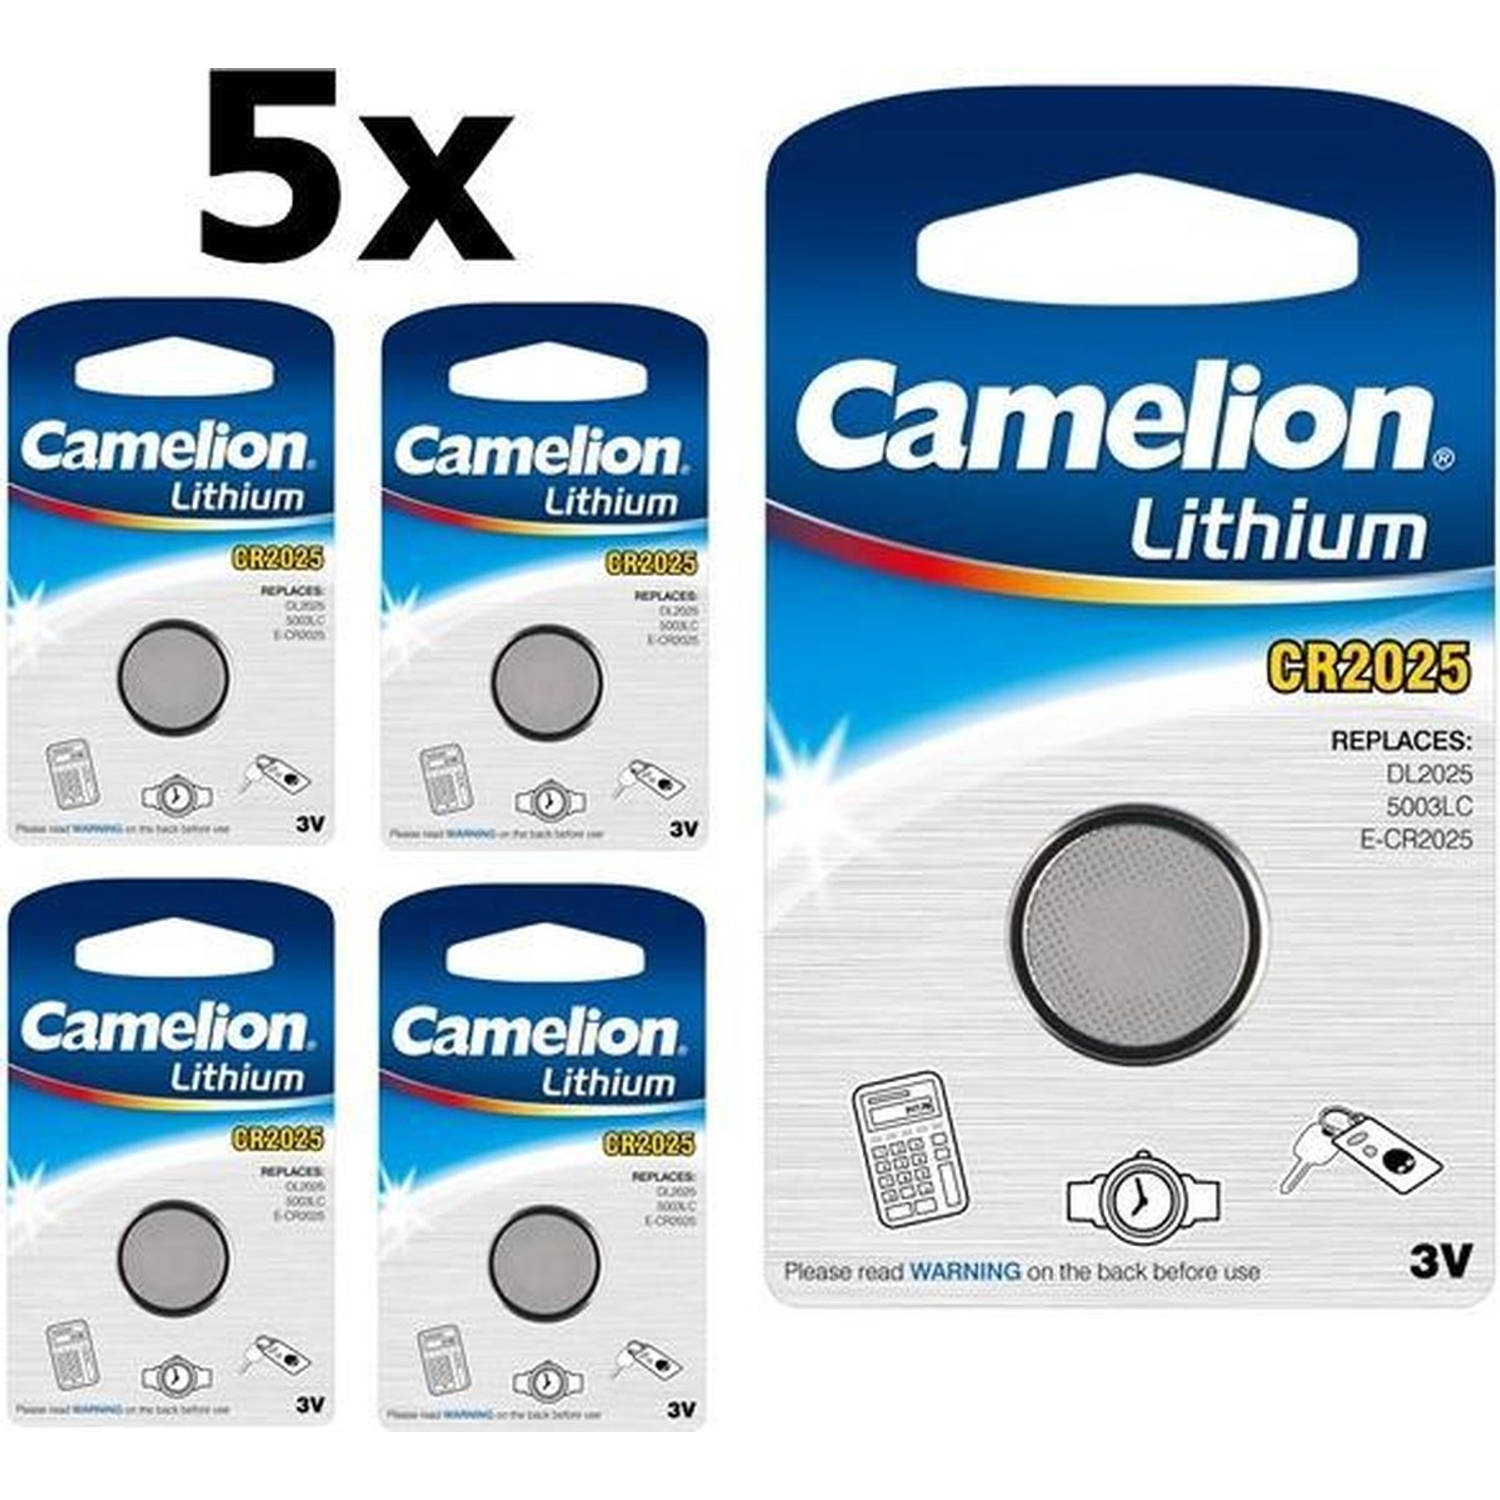 5 Stuks - Camelion CR2025 3v lithium knoopcel batterij